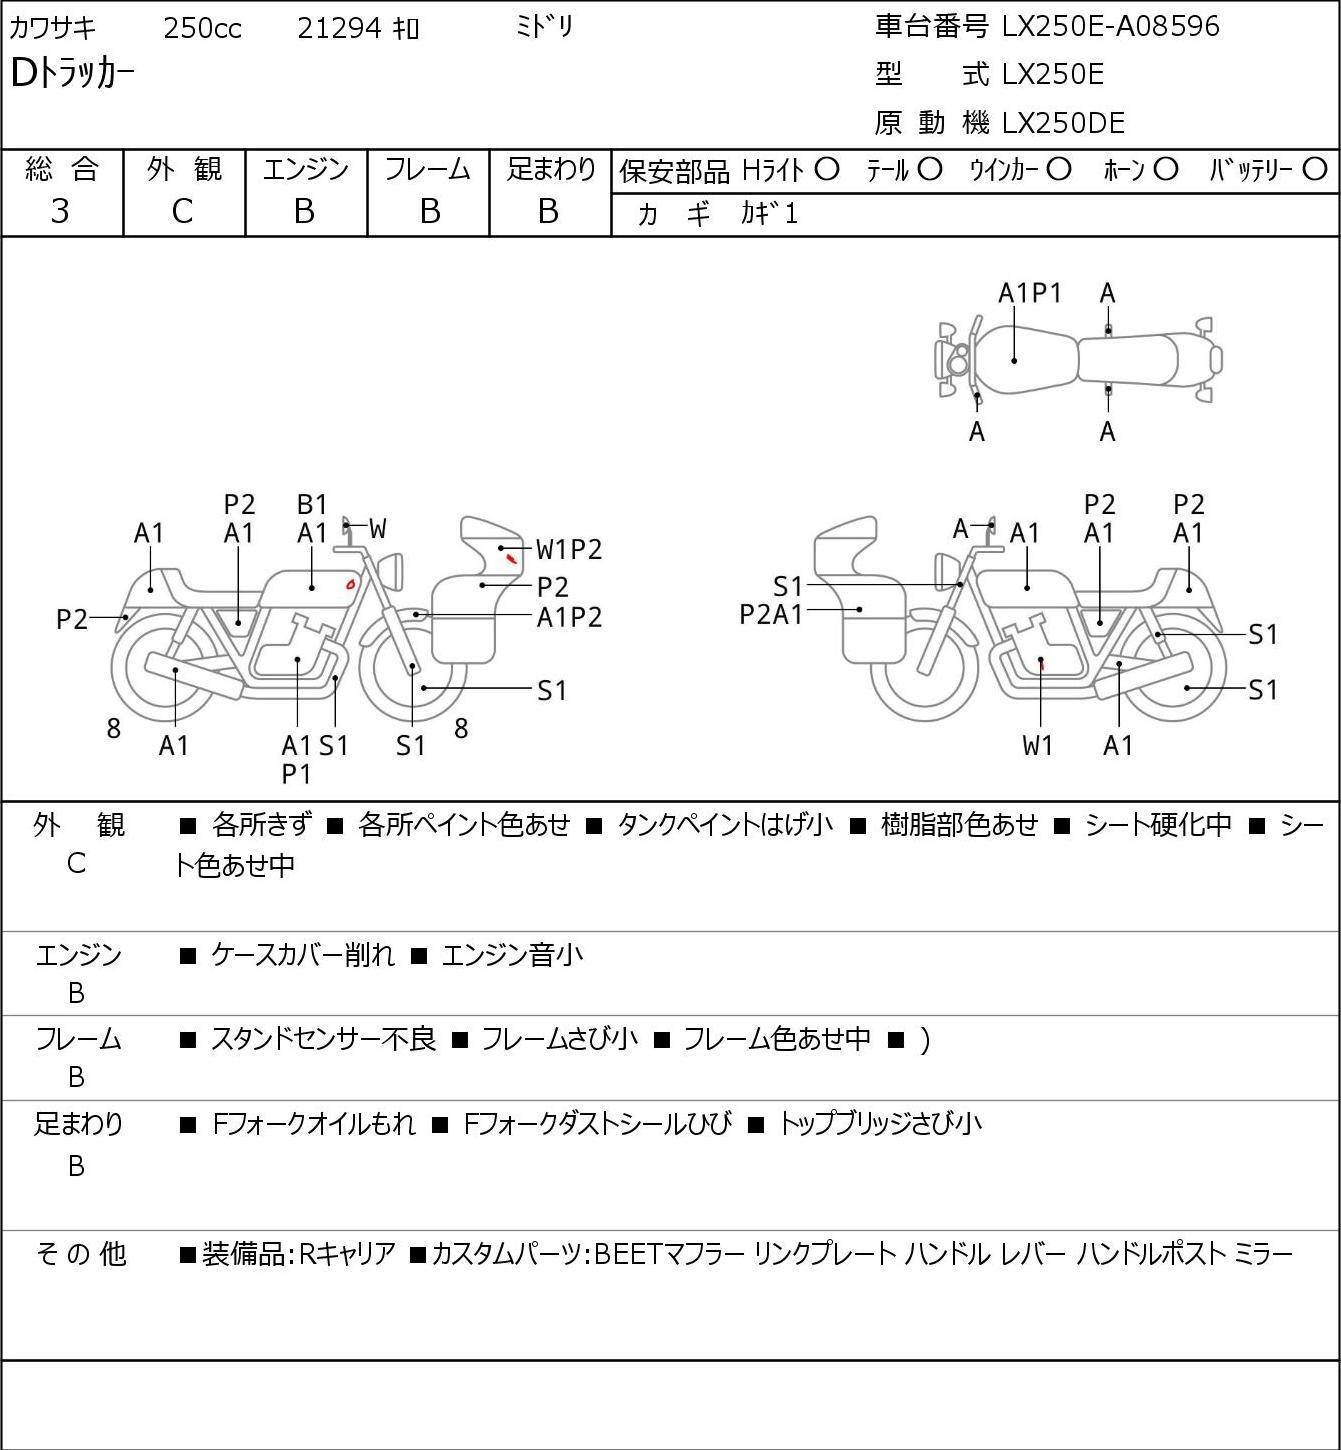 Kawasaki D-TRACKER LX250E г. 21294